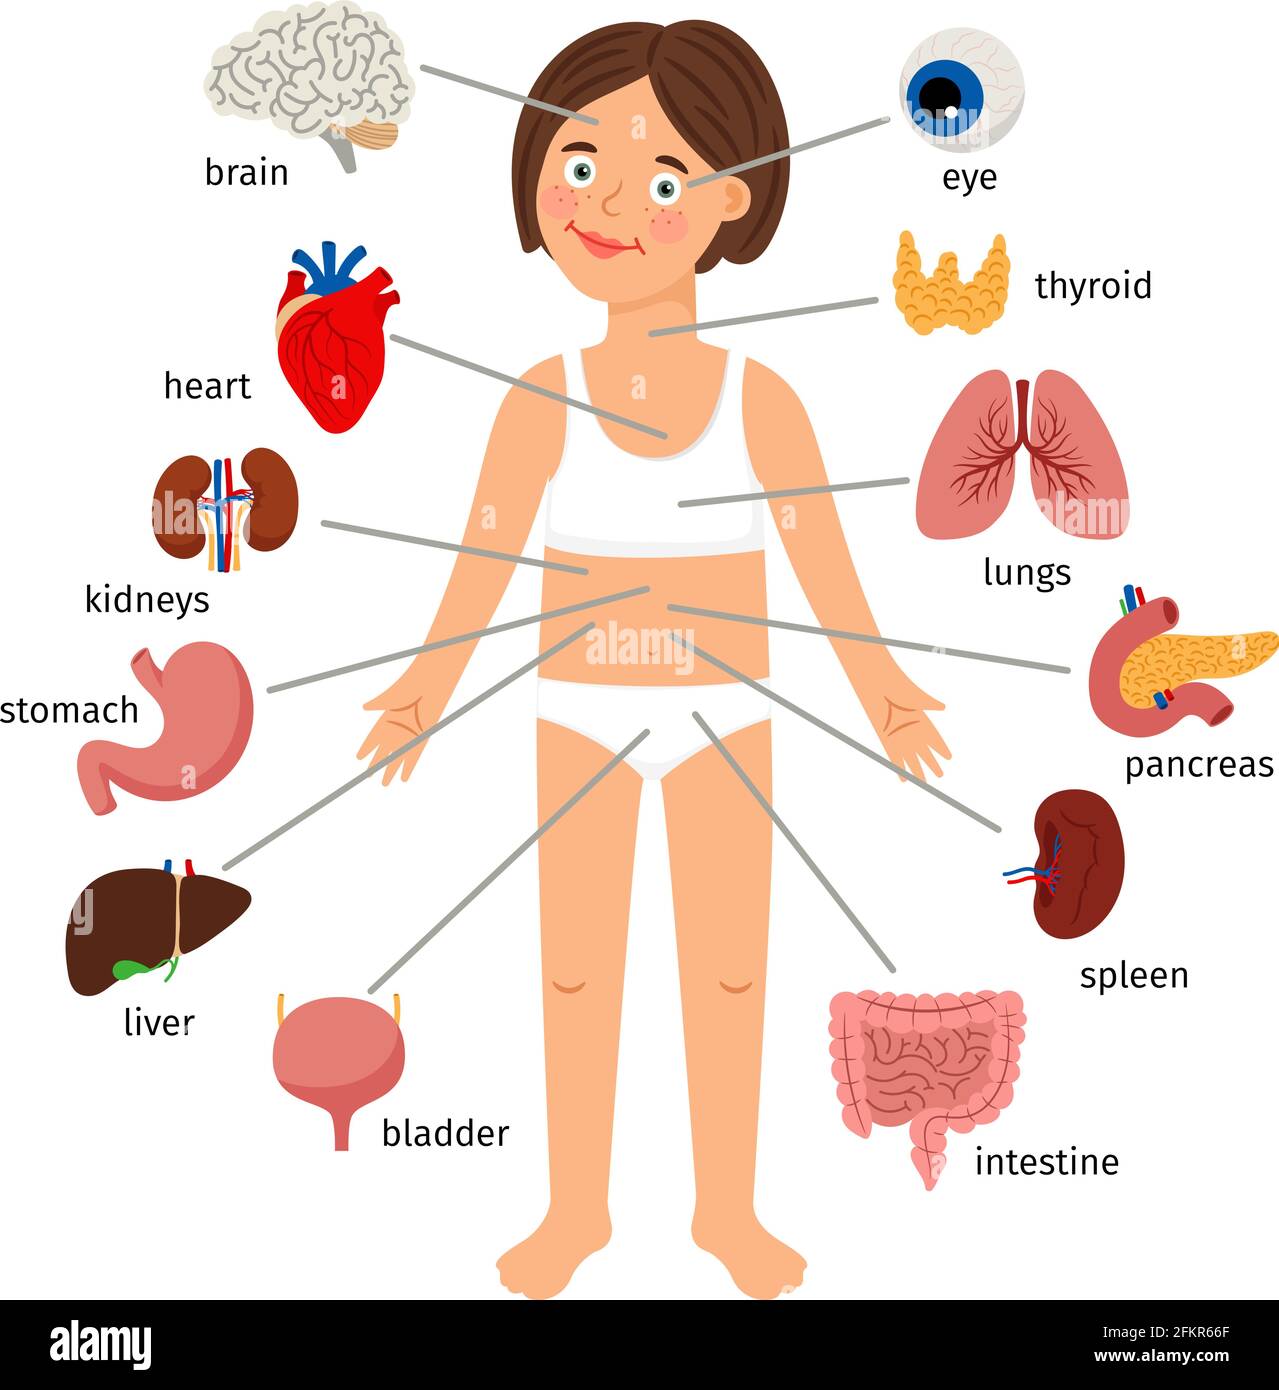 Innere Organe des Mädchens. Weibliche menschliche innere Organe auf Mädchen Körper Infografik Diagramm für Kinder Bildung, Vektor-Illustration auf weißem Hintergrund Stock Vektor